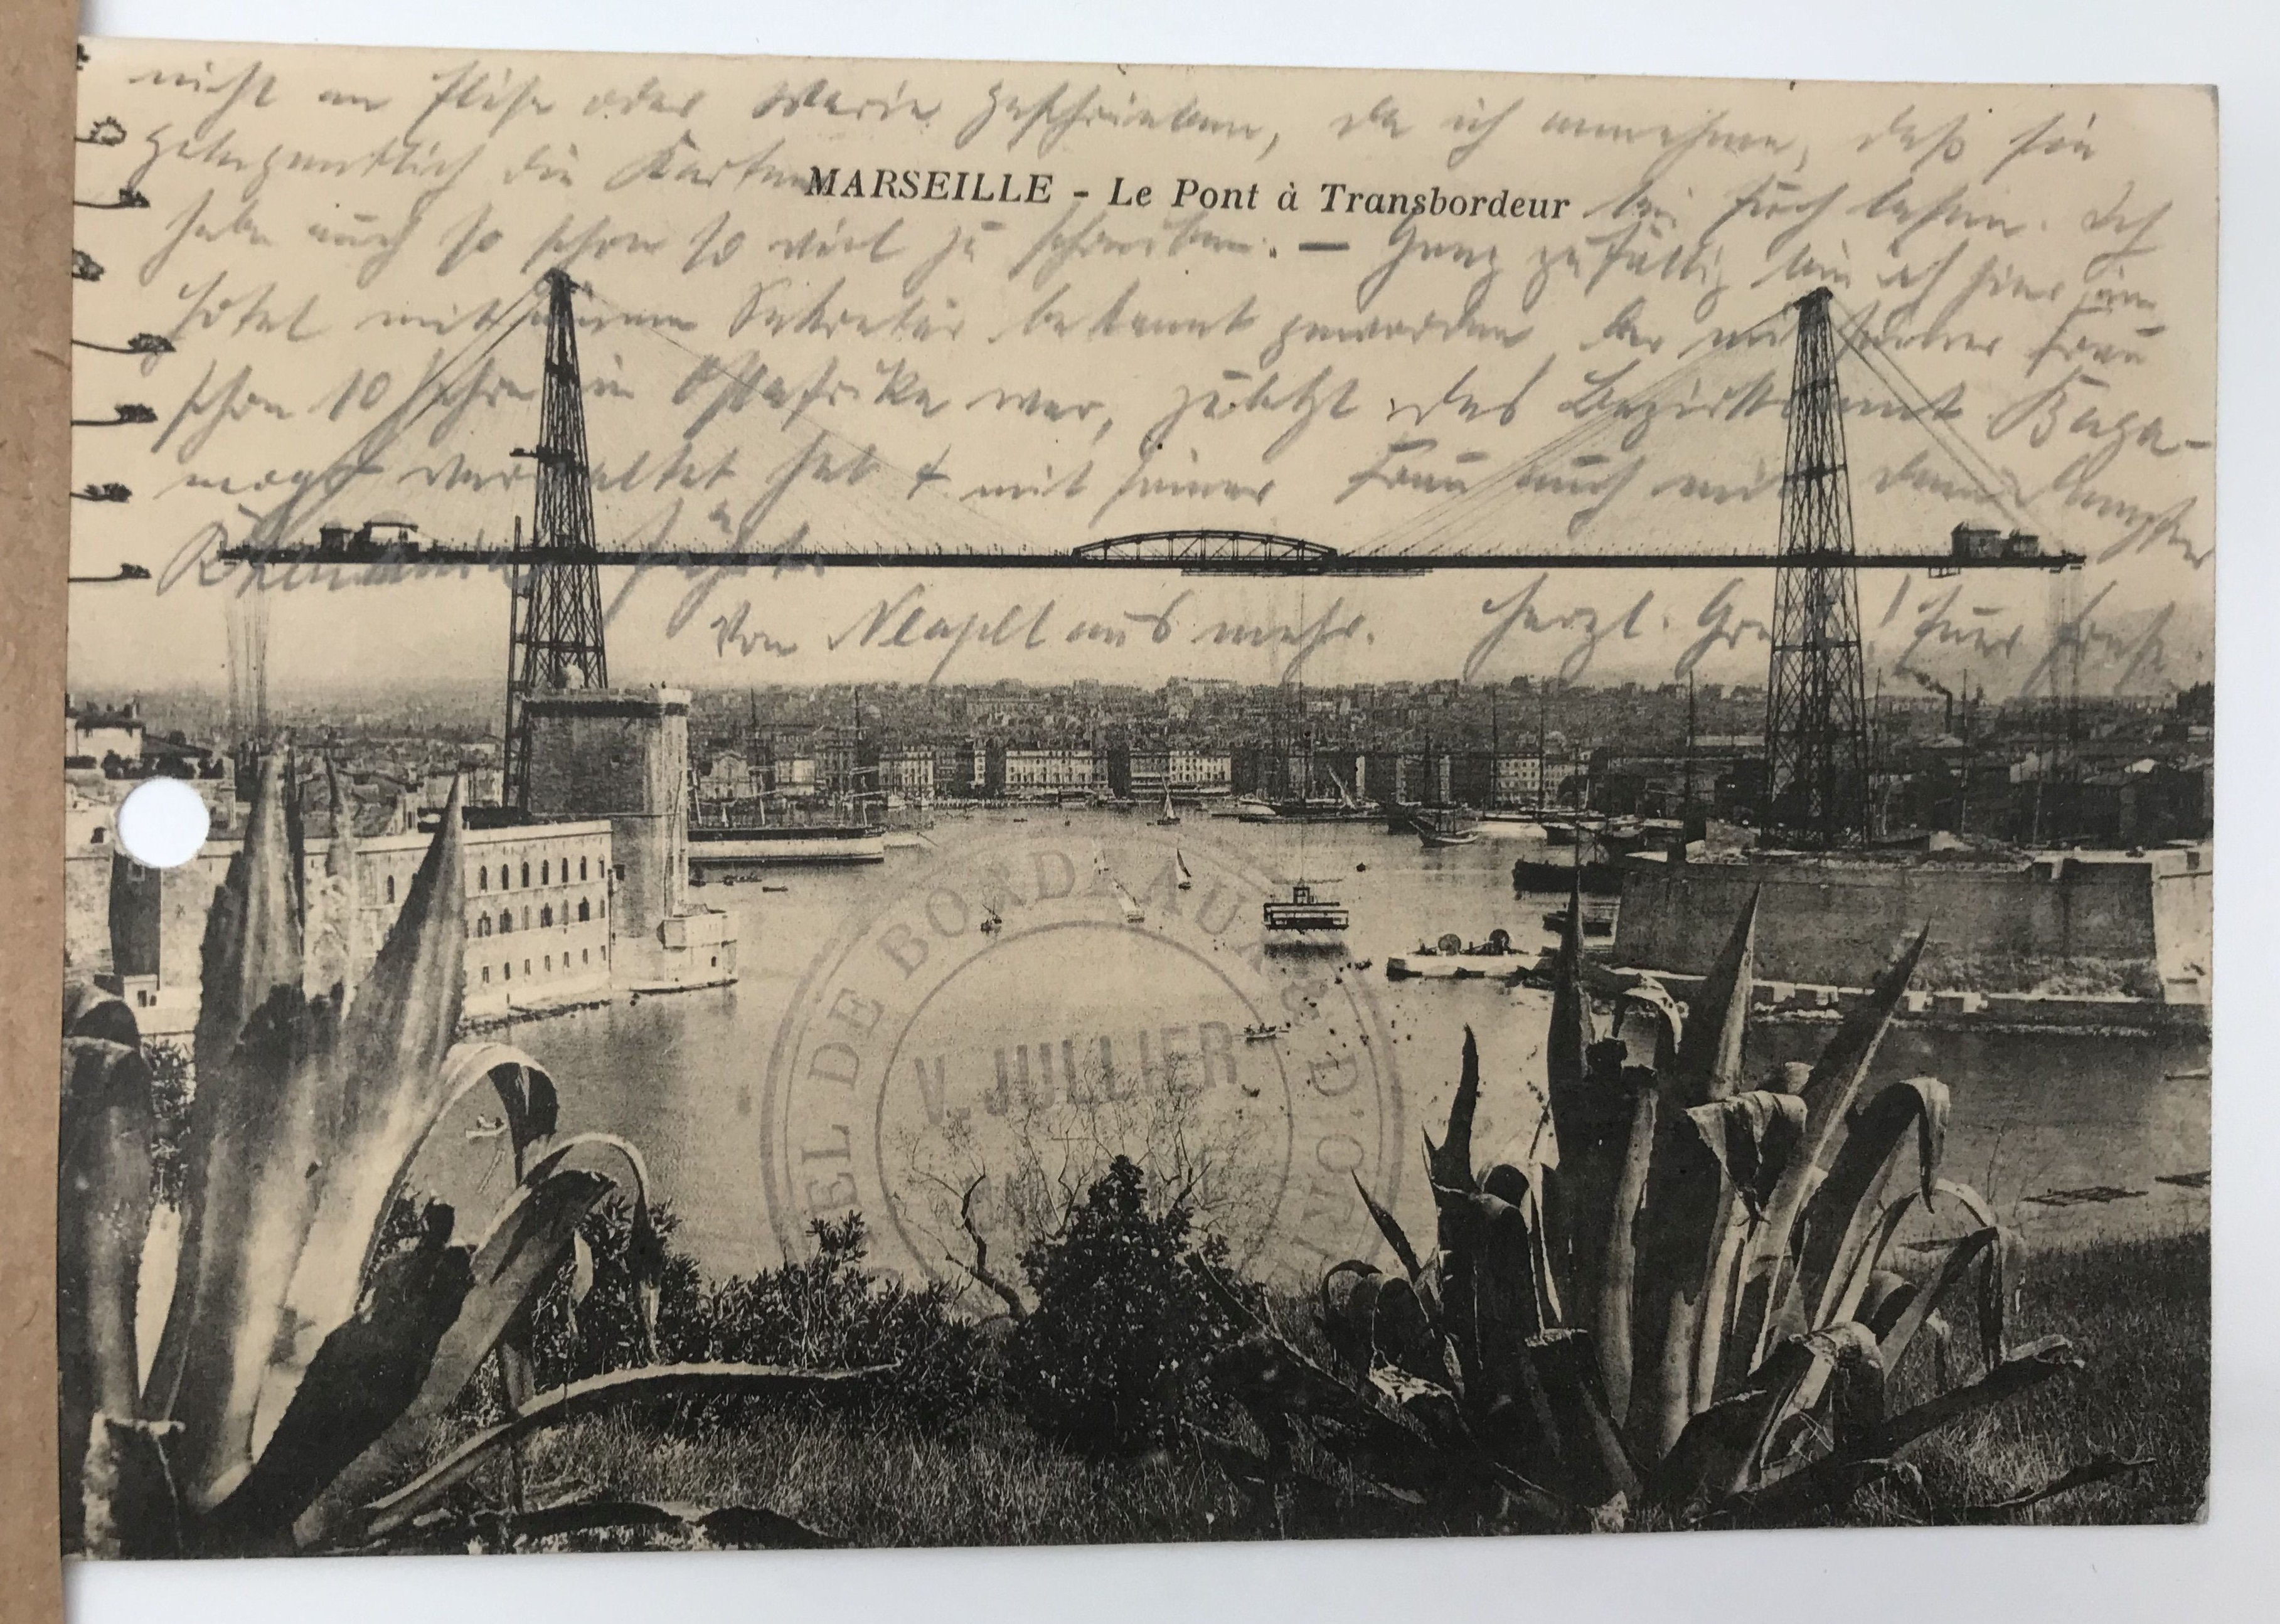 Marseille - Le Pont à Transbordeur, Postkarte, 1913, Museum der Stadt Lünen